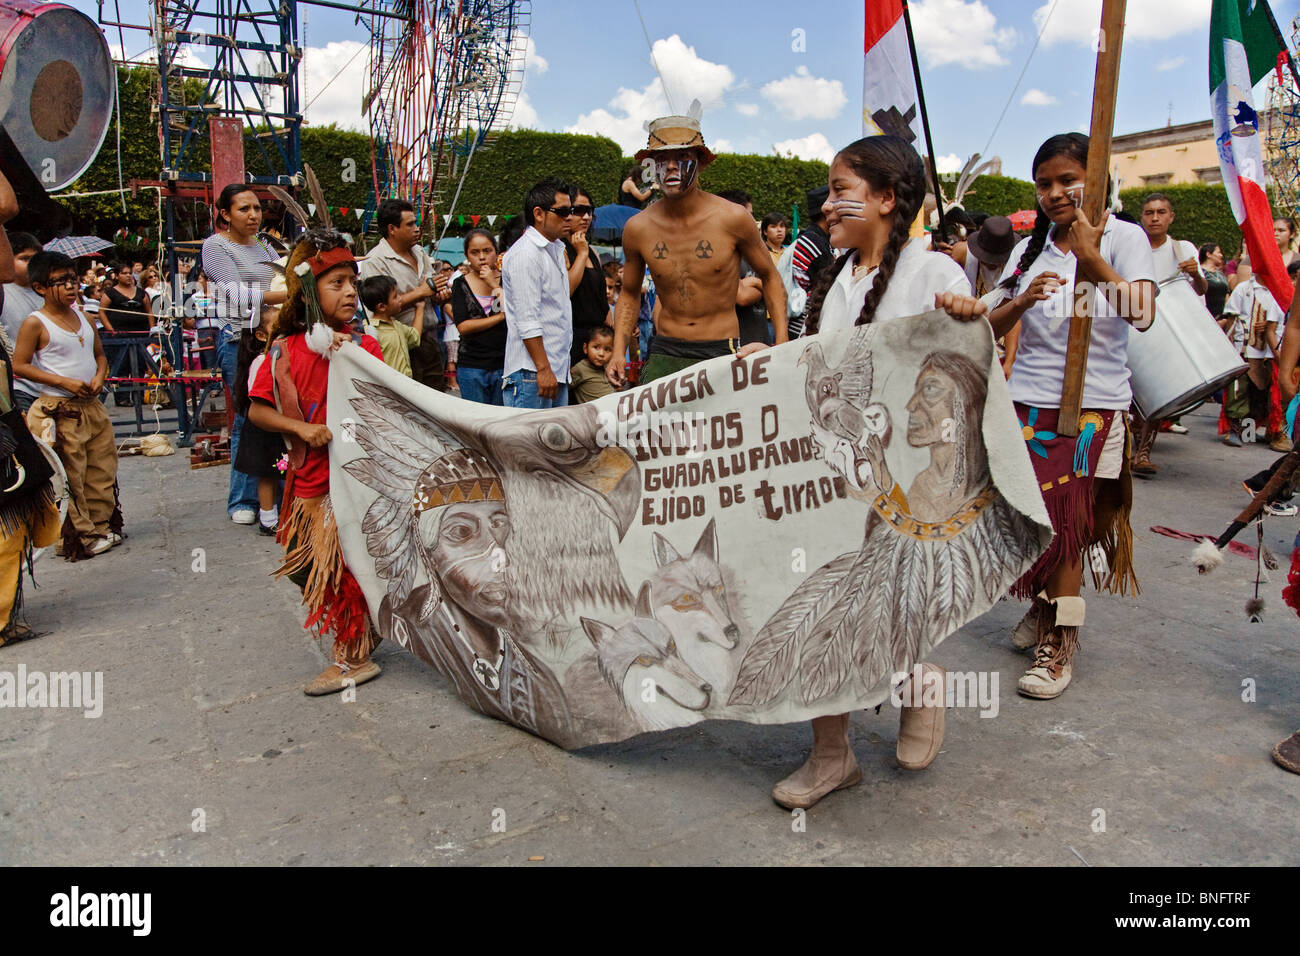 Bambini indigeni a piedi con un banner in indipendenza annuale parata del giorno nel mese di settembre - San Miguel De Allende, Messico Foto Stock